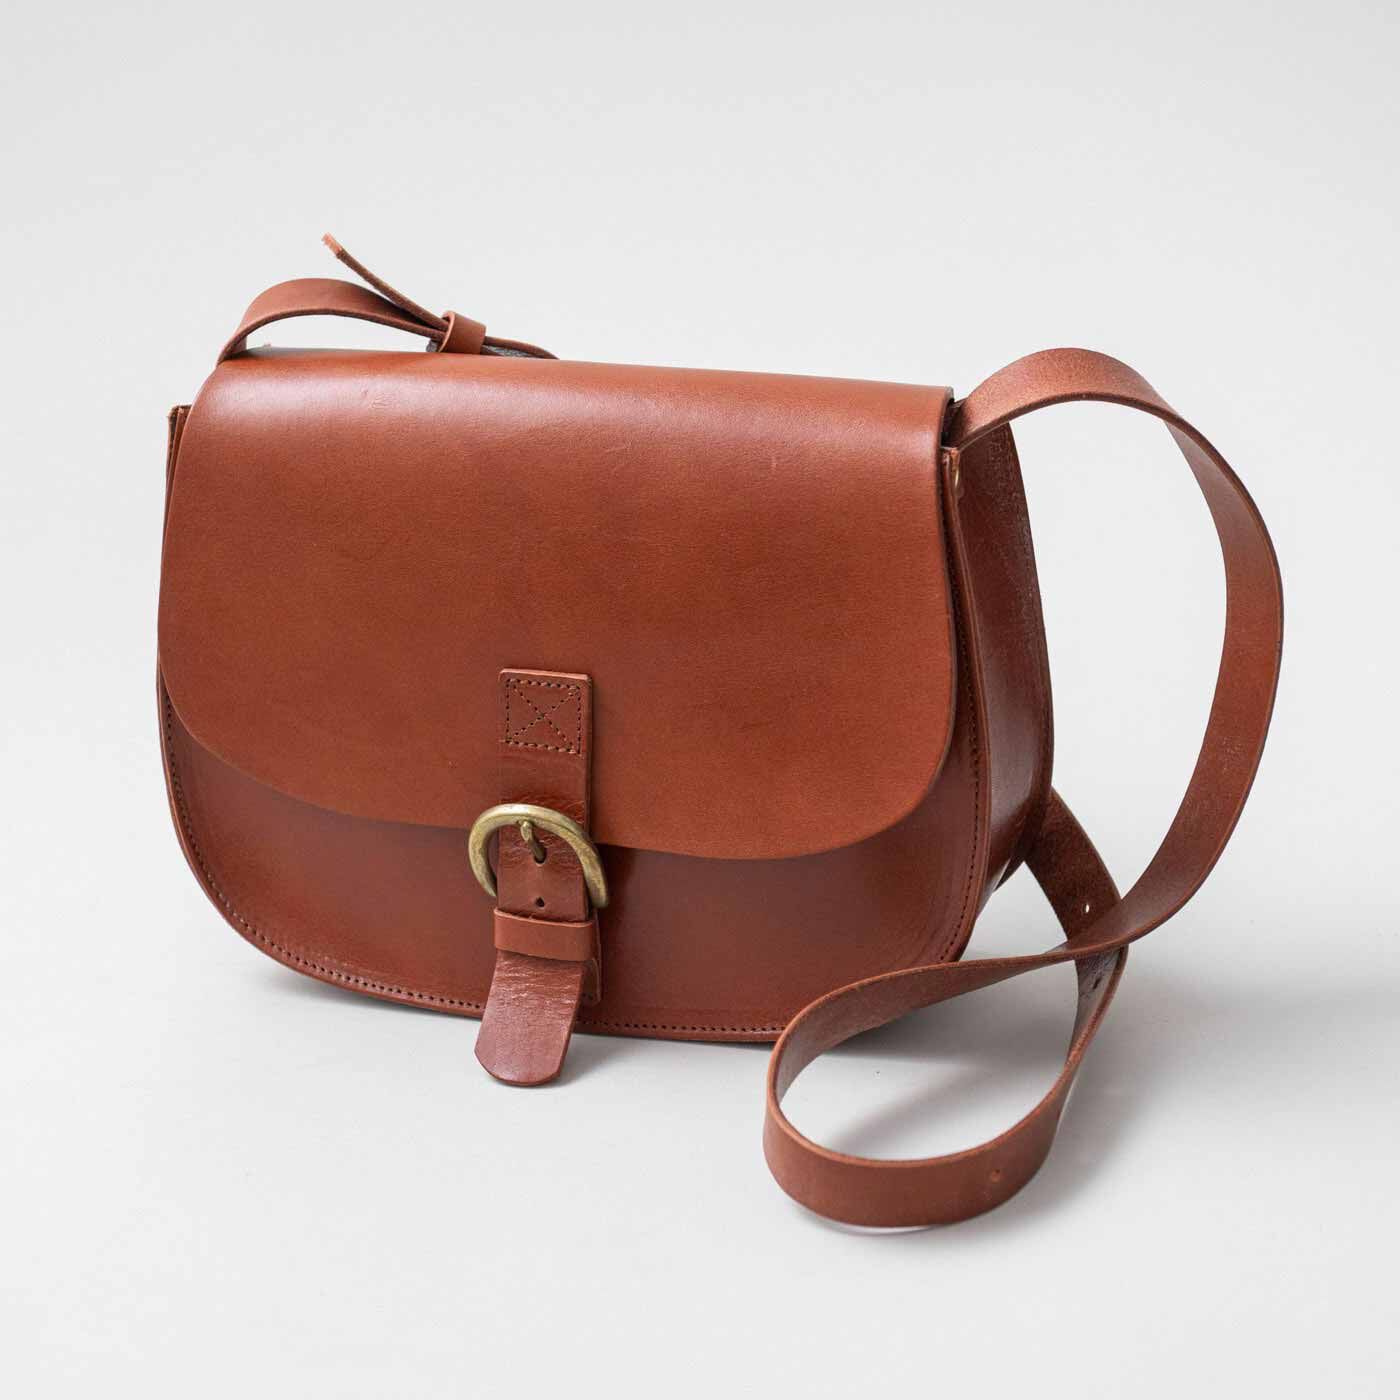 ＆Stories|福岡の鞄作家と作った　職人本革のフォートバッグ〈レッドブラウン〉|外国の古い鞄をイメージしたデザインは、どこかクラシカルなたたずまい。